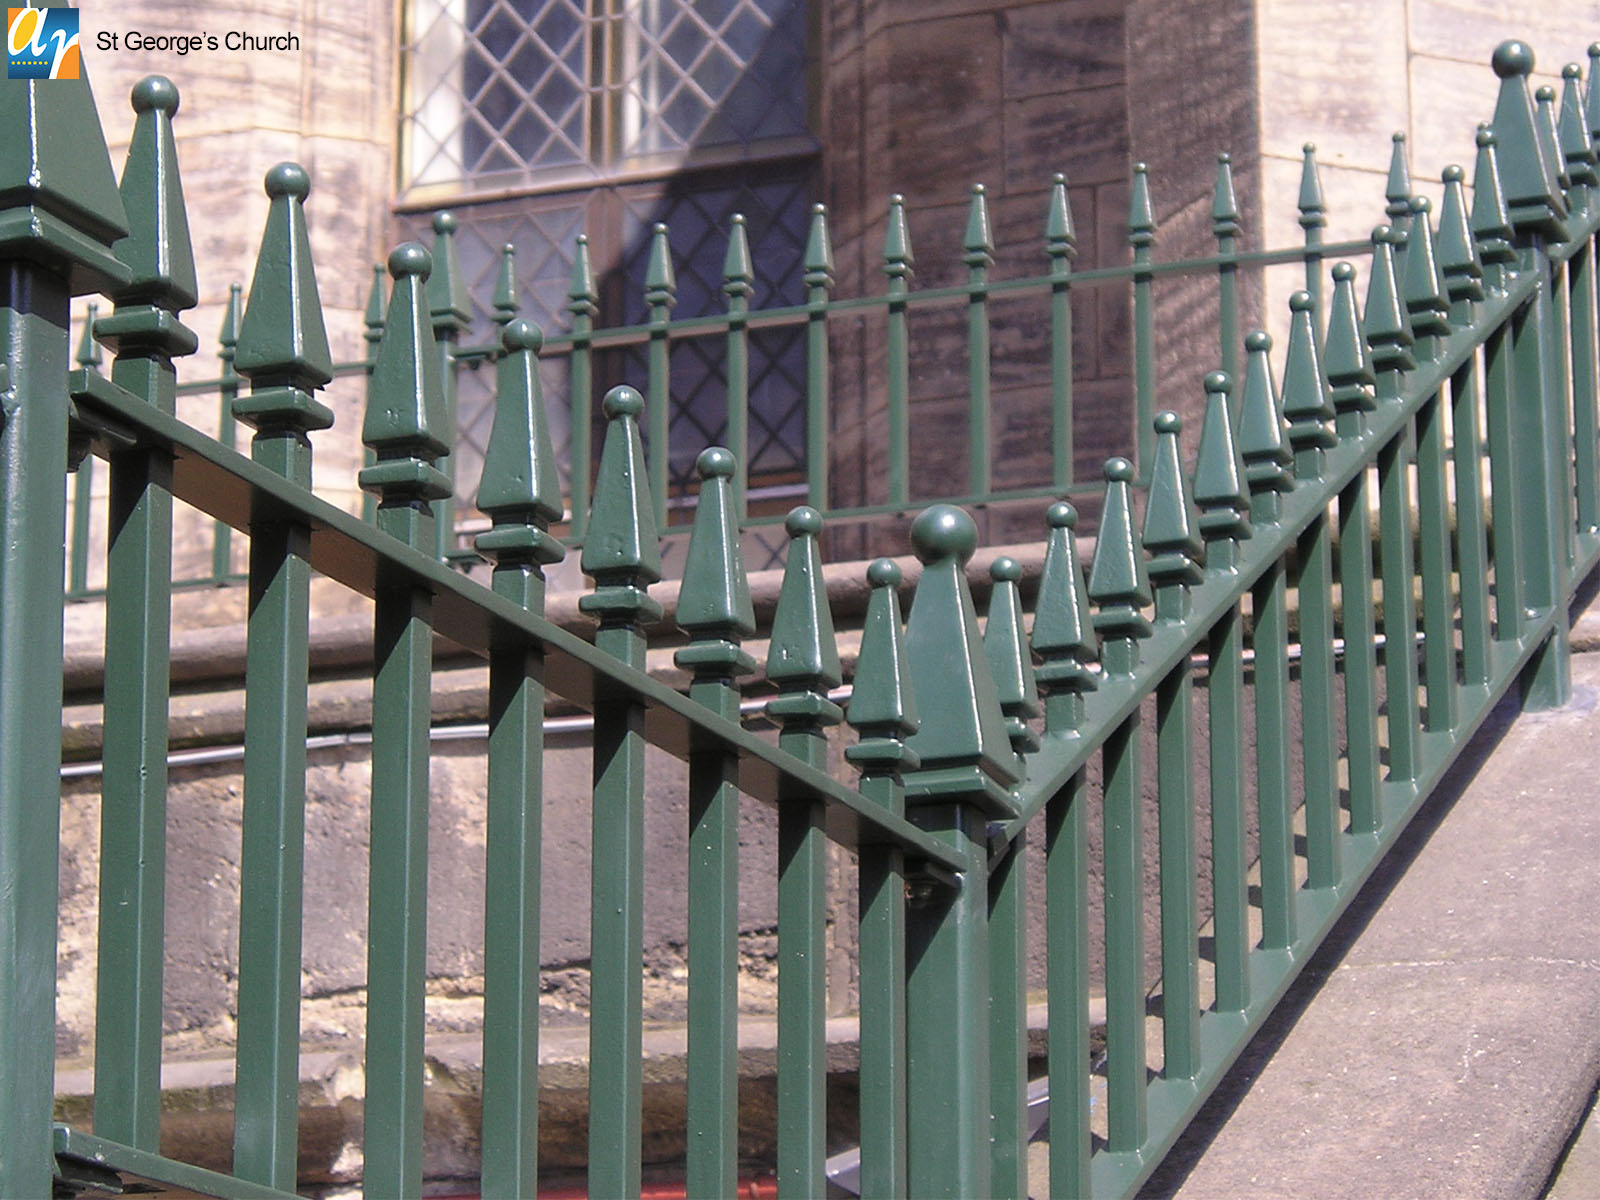 St. George's church churchill vertical bar railings